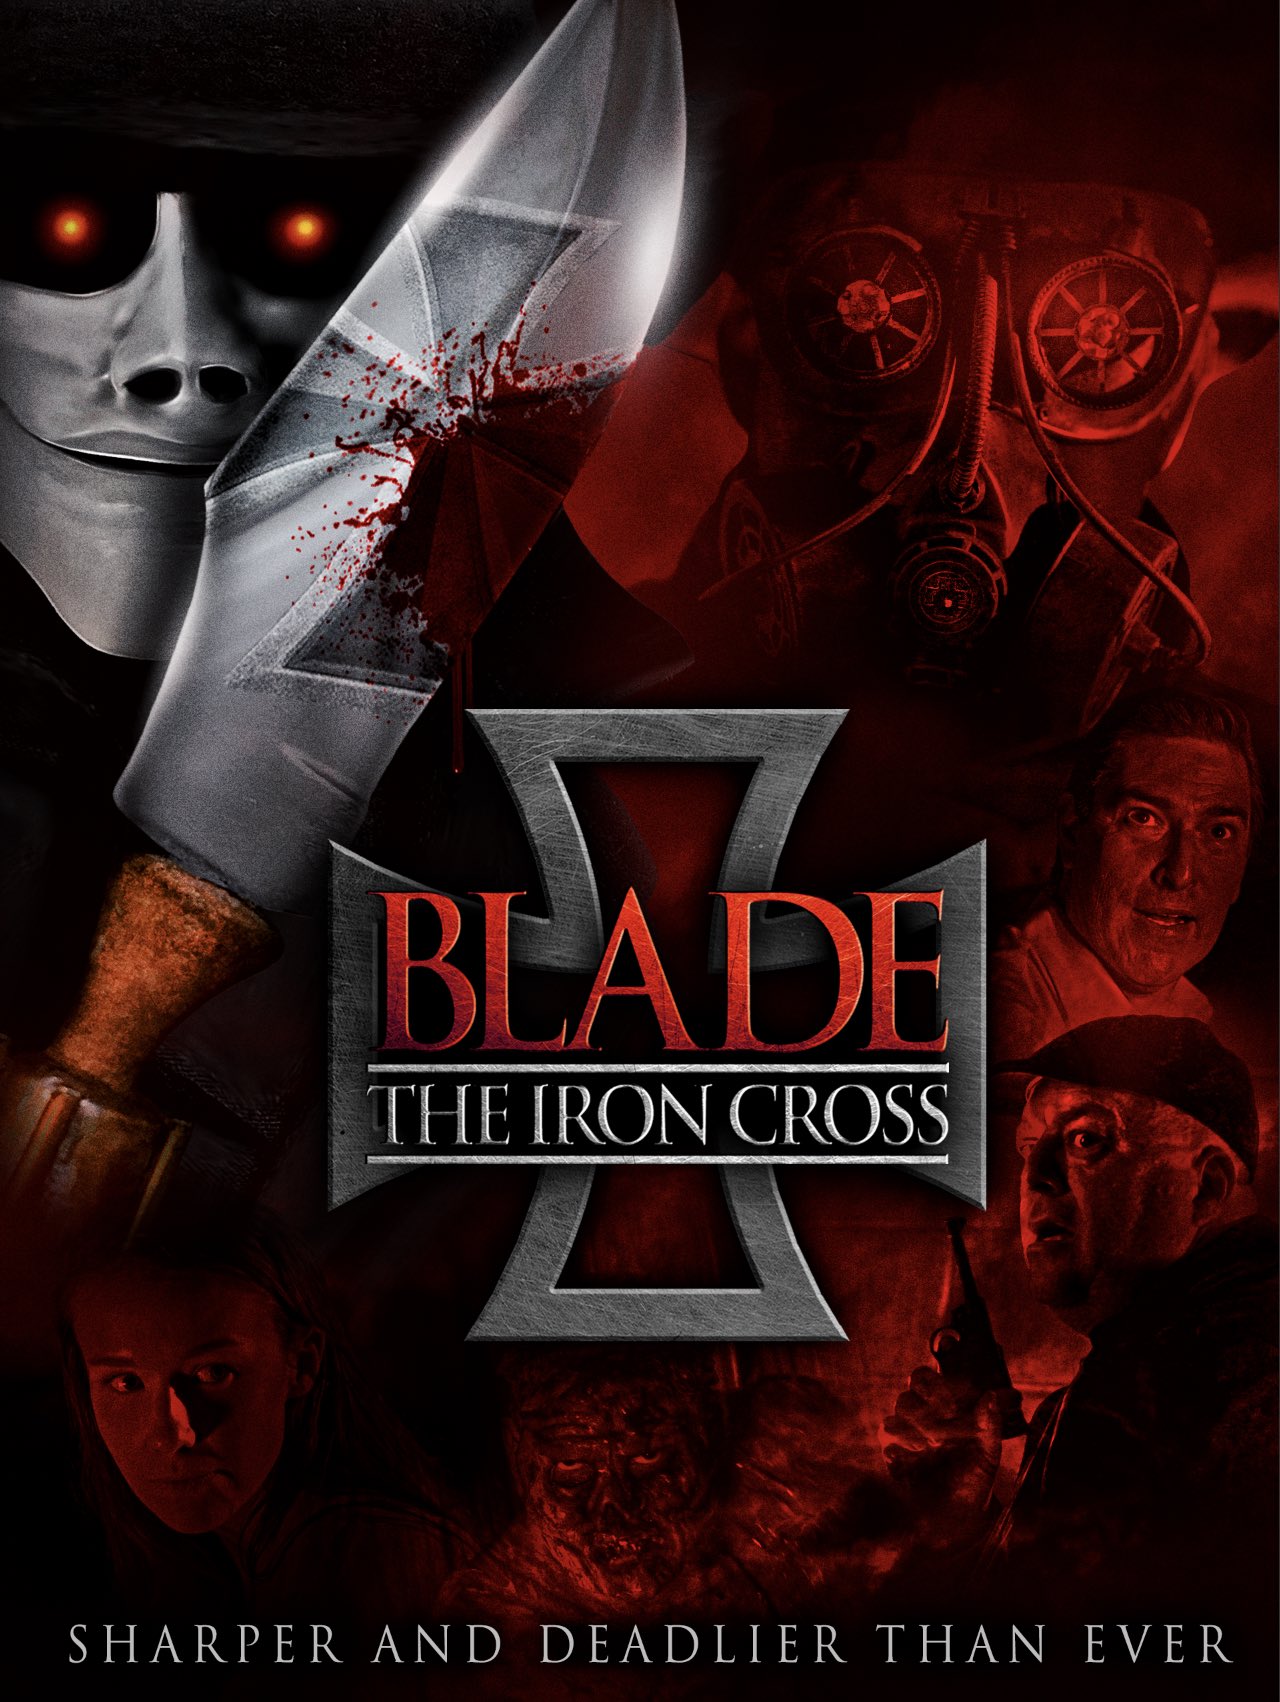 Μπλειντ: Ο Σιδηρουσ Σταυροσ / Blade the Iron Cross (2020)